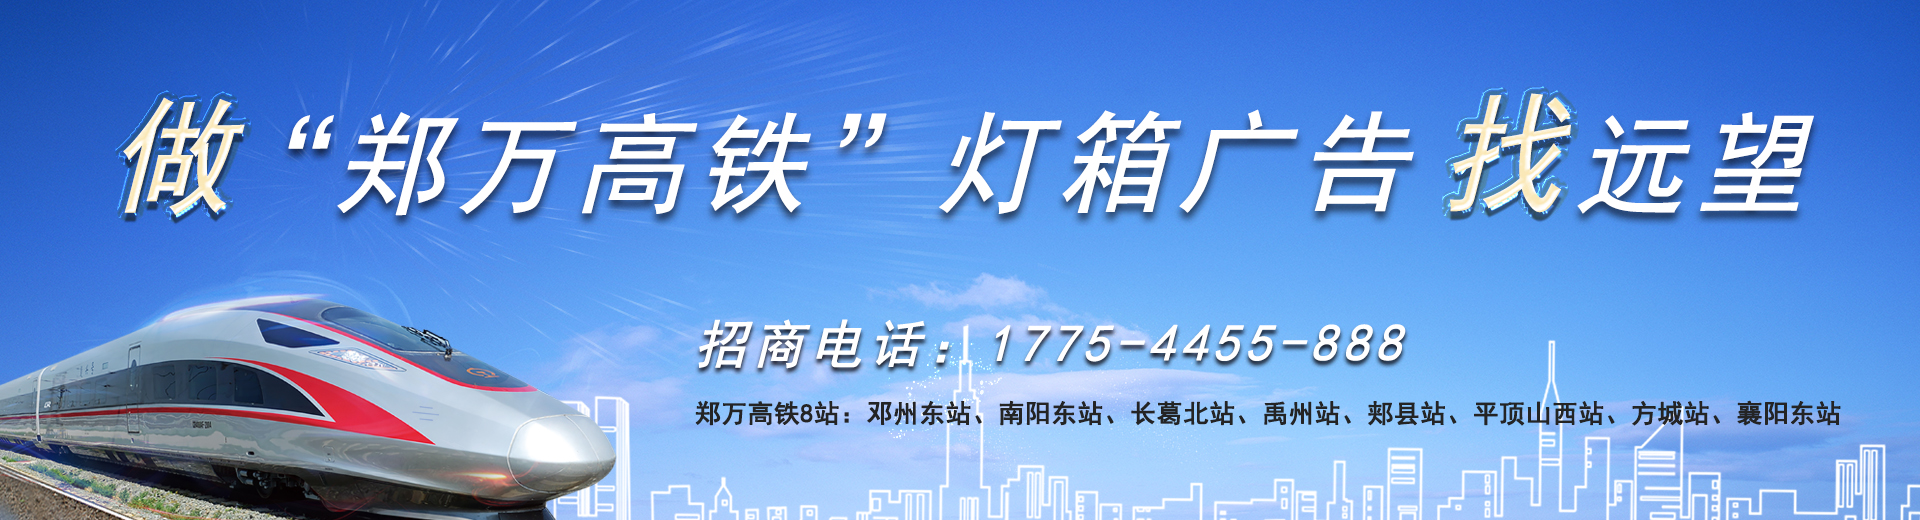 襄阳火车站广告